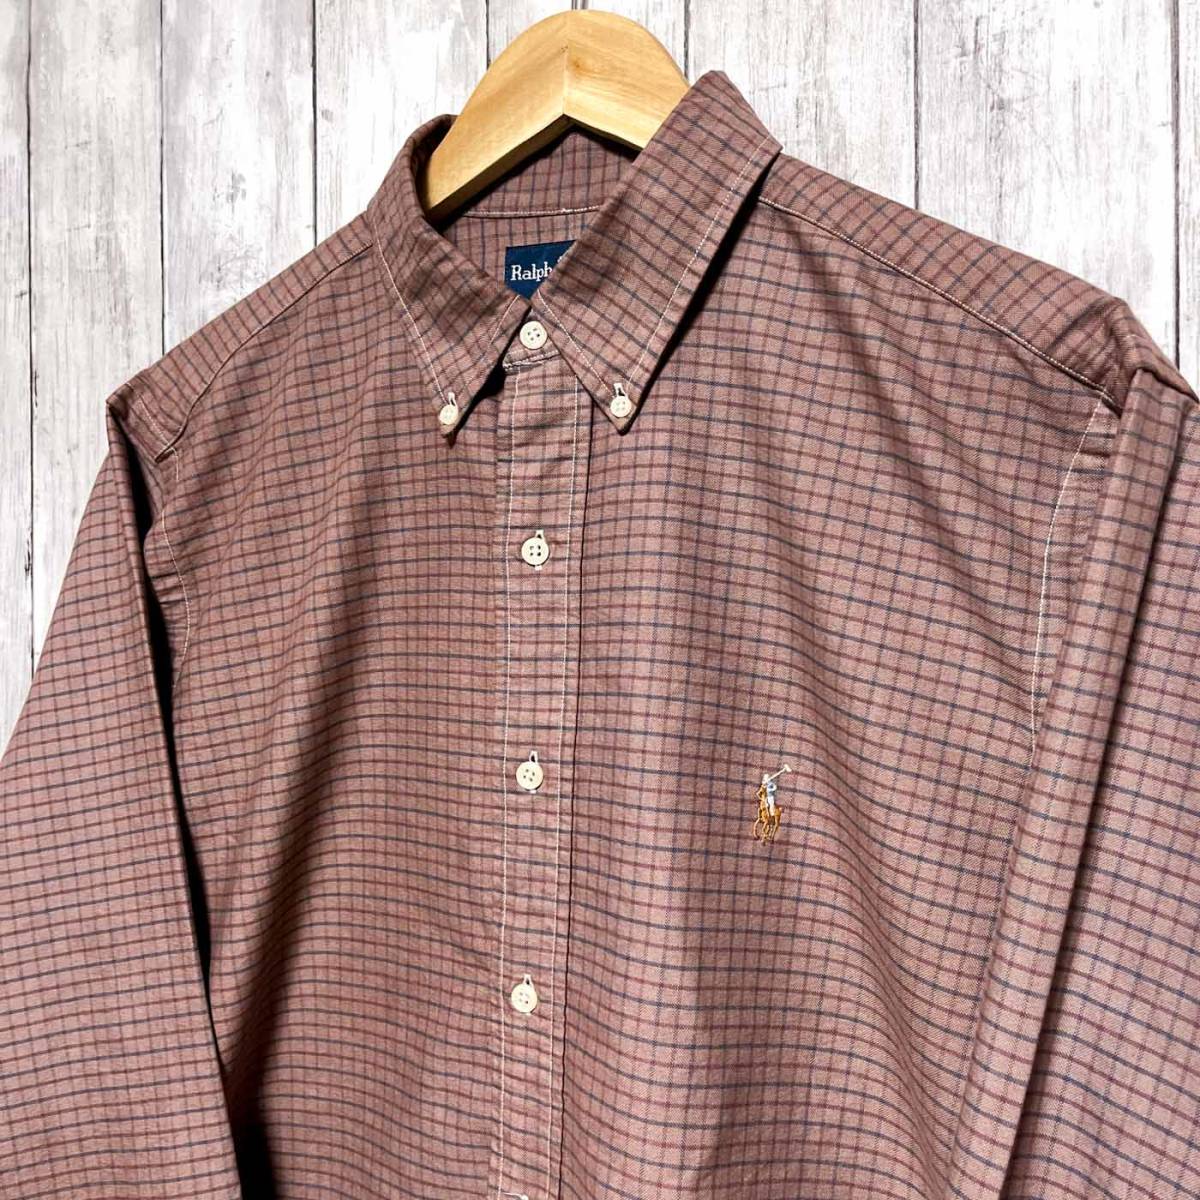 ラルフローレン Ralph Lauren チェックシャツ 長袖シャツ メンズ ワンポイント サイズ16 1/2 L~XLサイズ 3-49_画像3